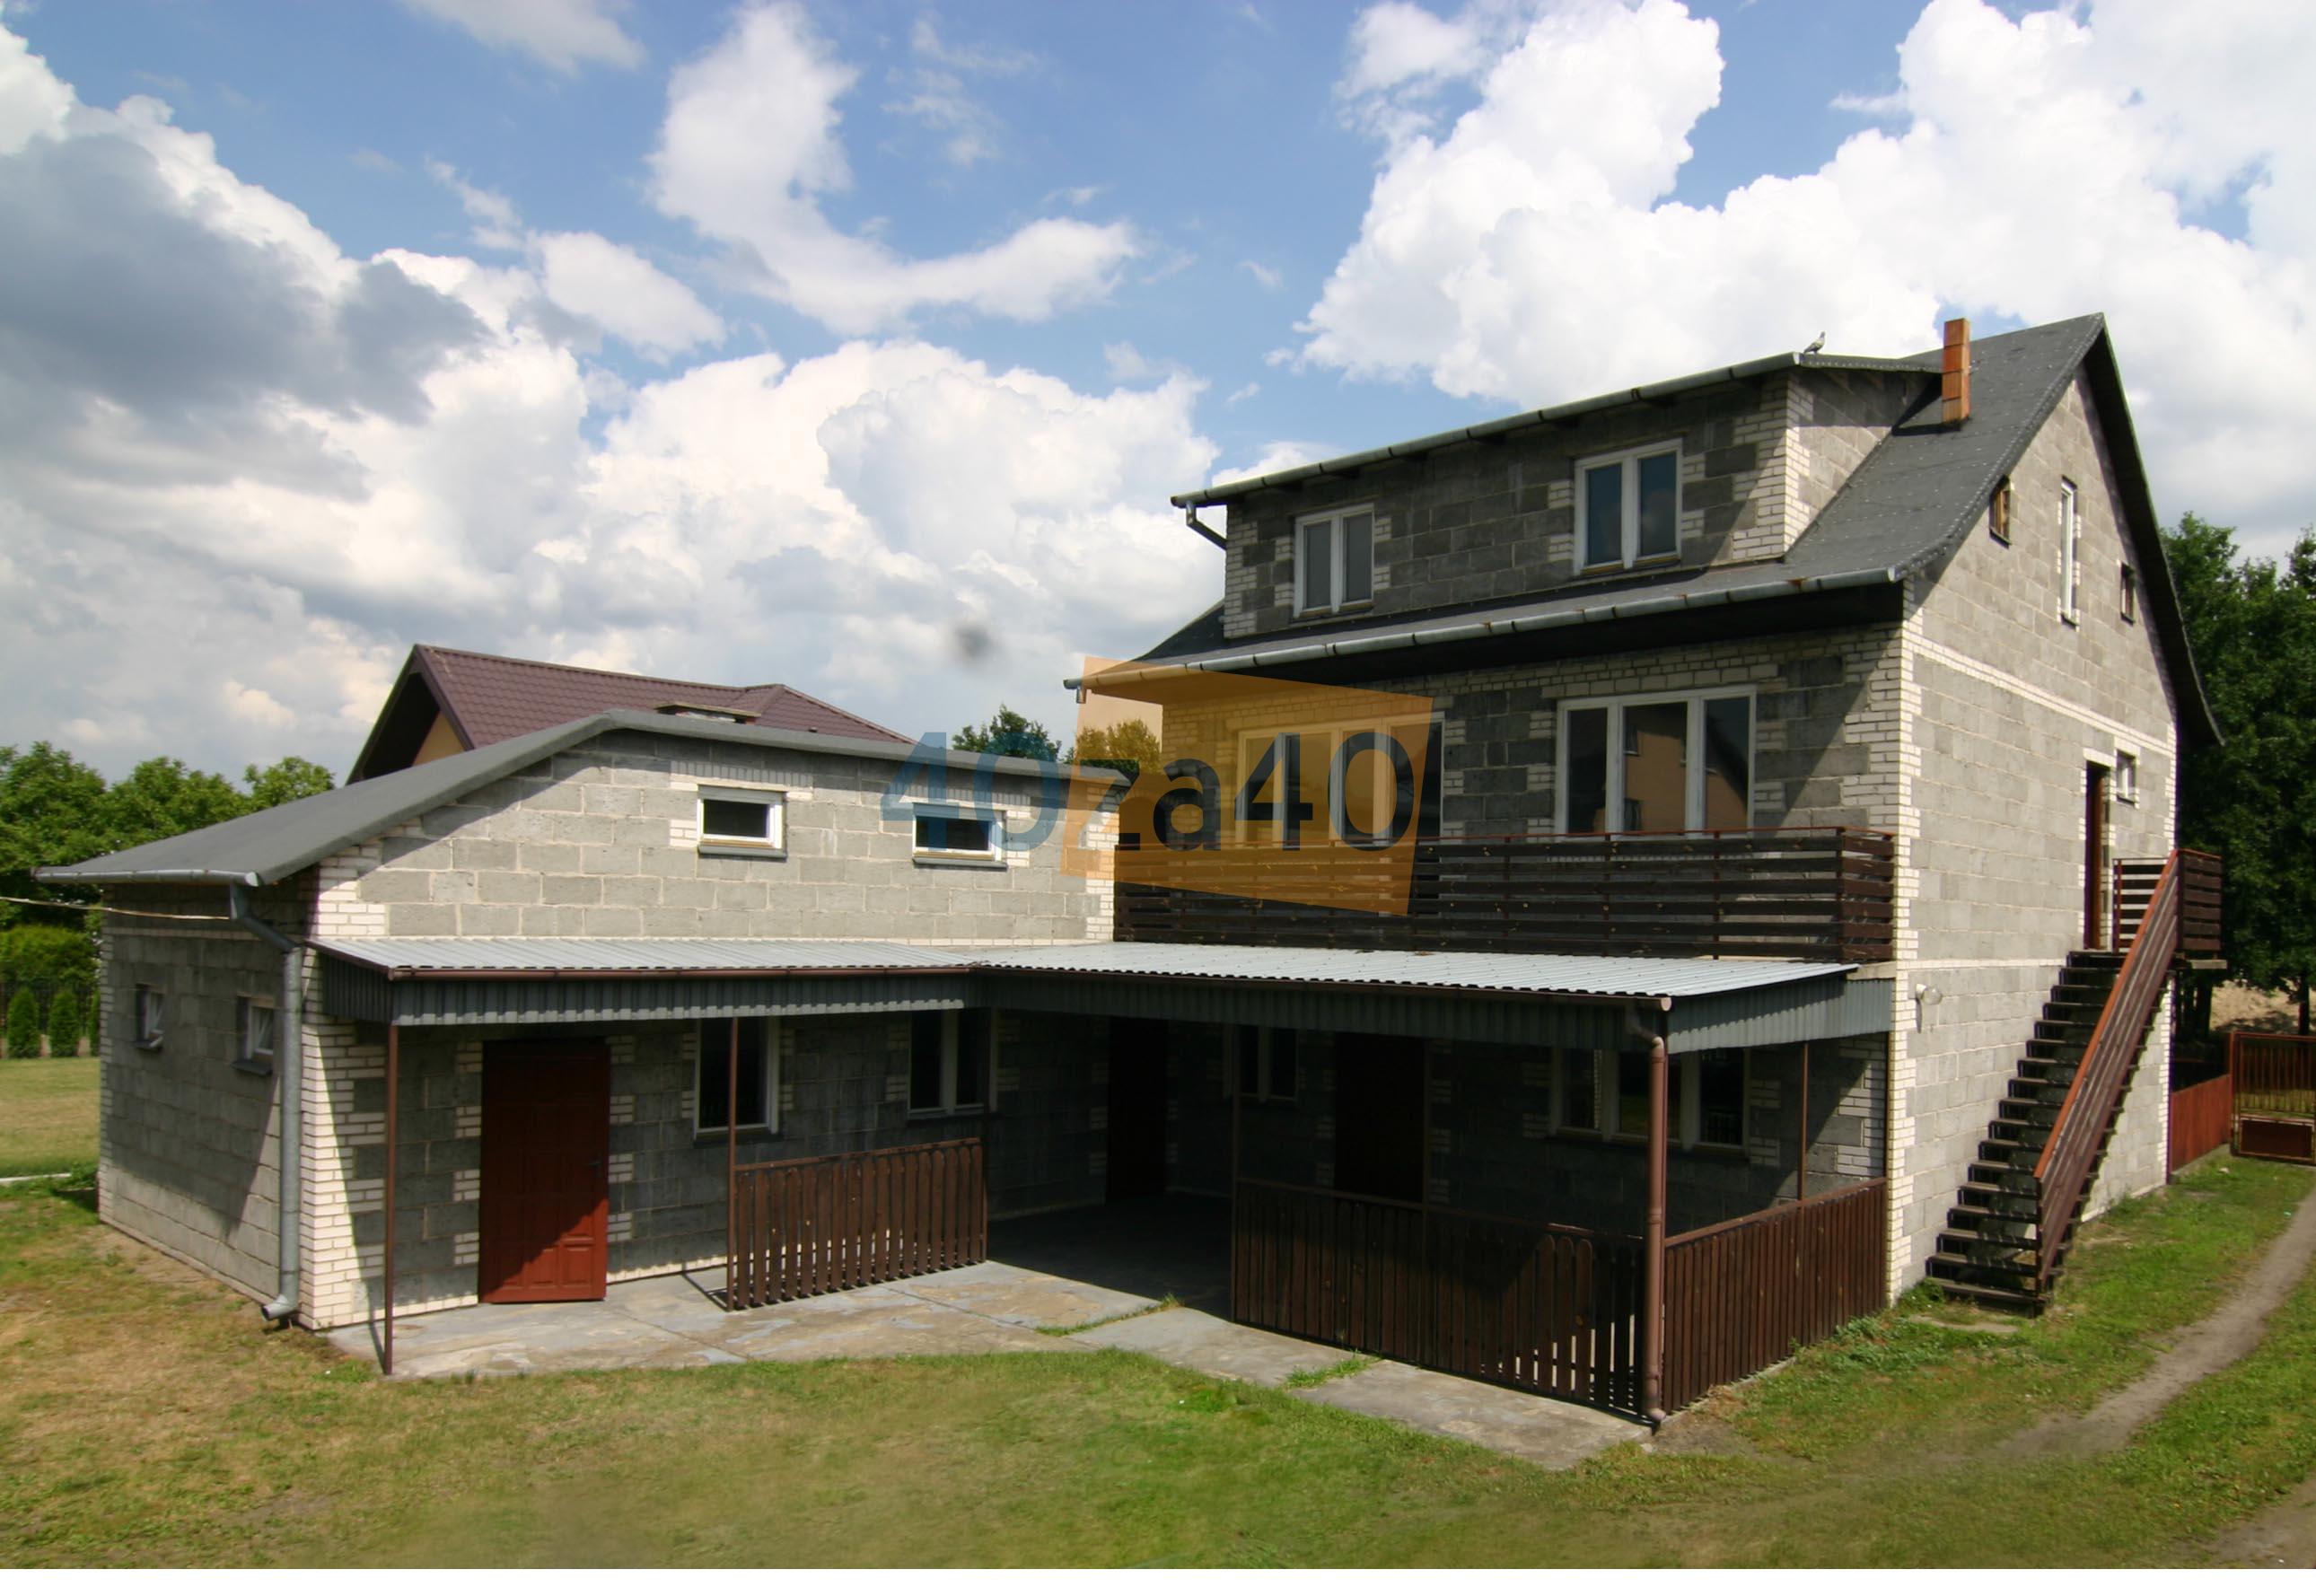 Dom na sprzedaż, powierzchnia: 300 m2, pokoje: 4, cena: 450 000,00 PLN, Żyrardów, kontakt: PL +48 512 302 458